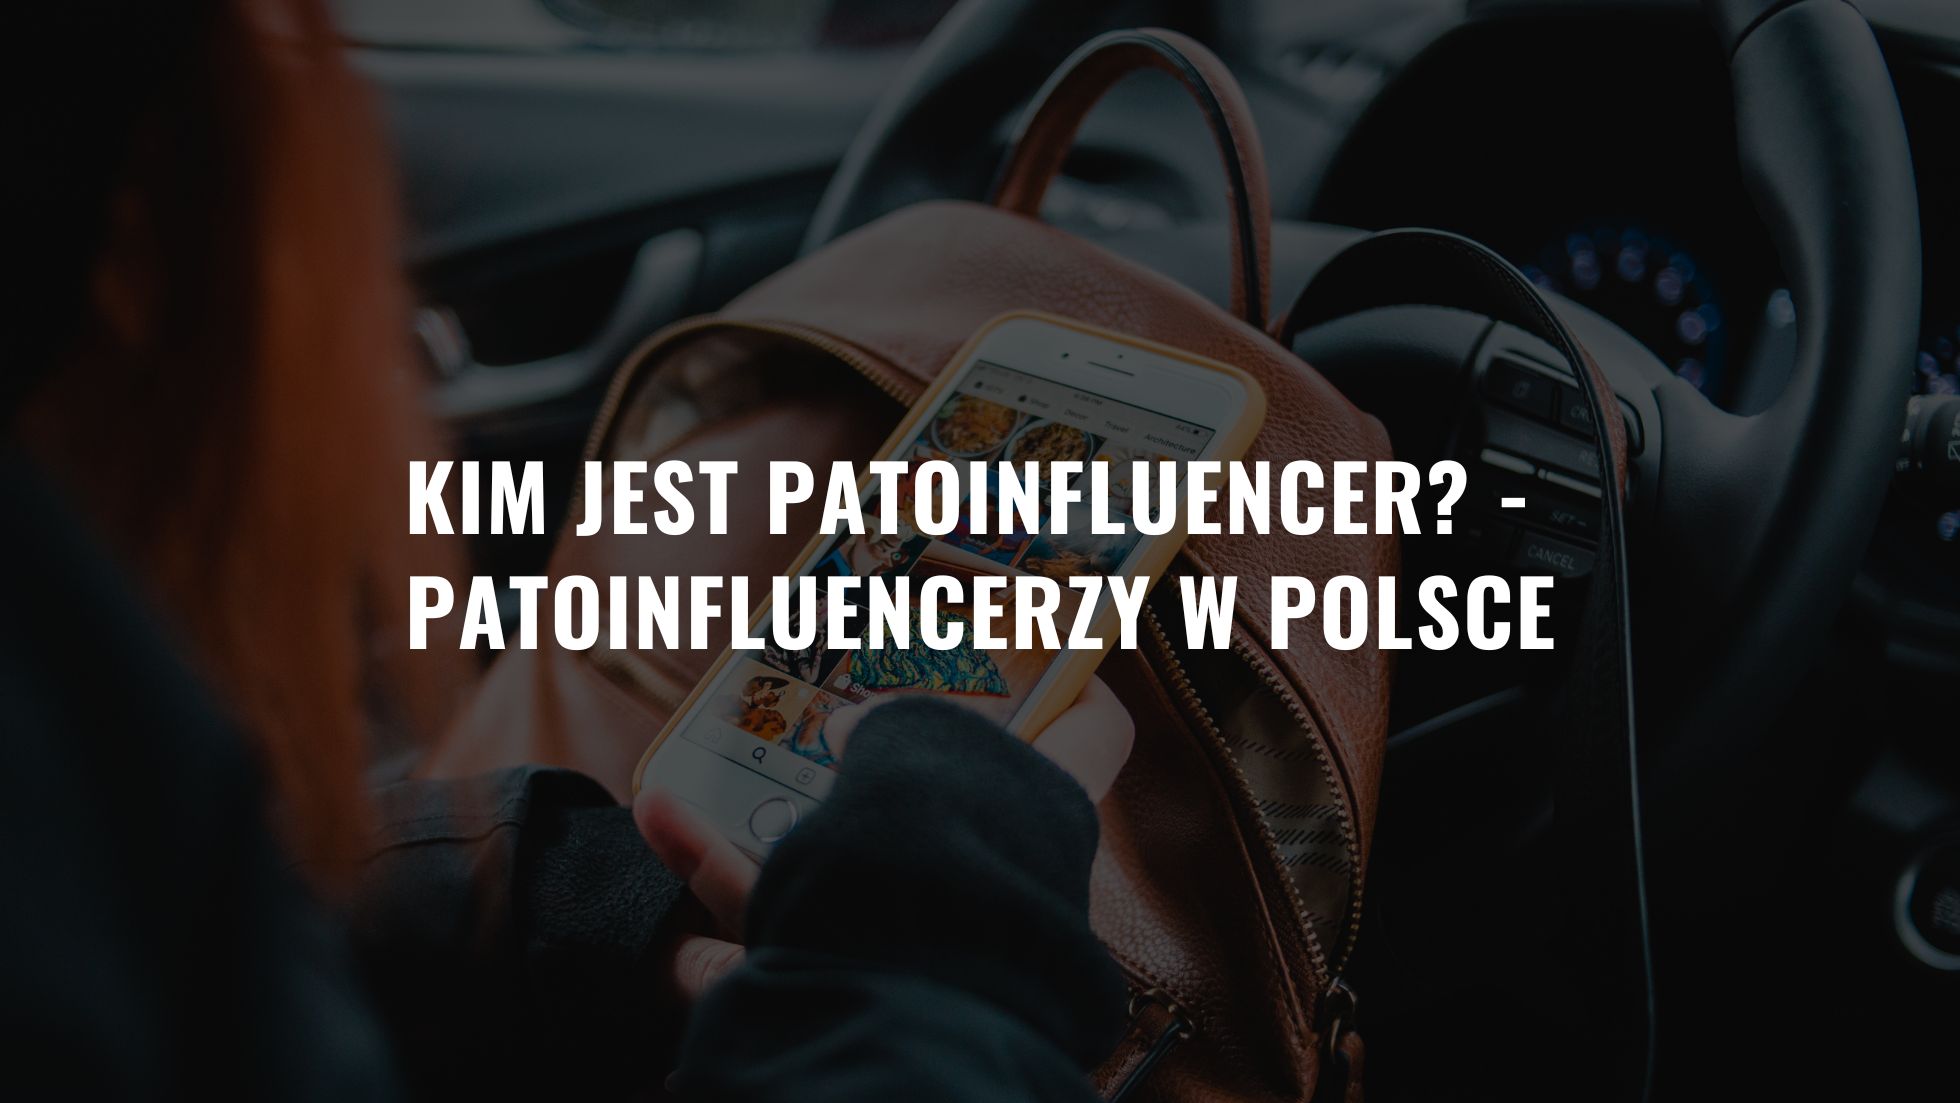 Kim jest patoinfluencer - Patoinfluencerzy w Polsce